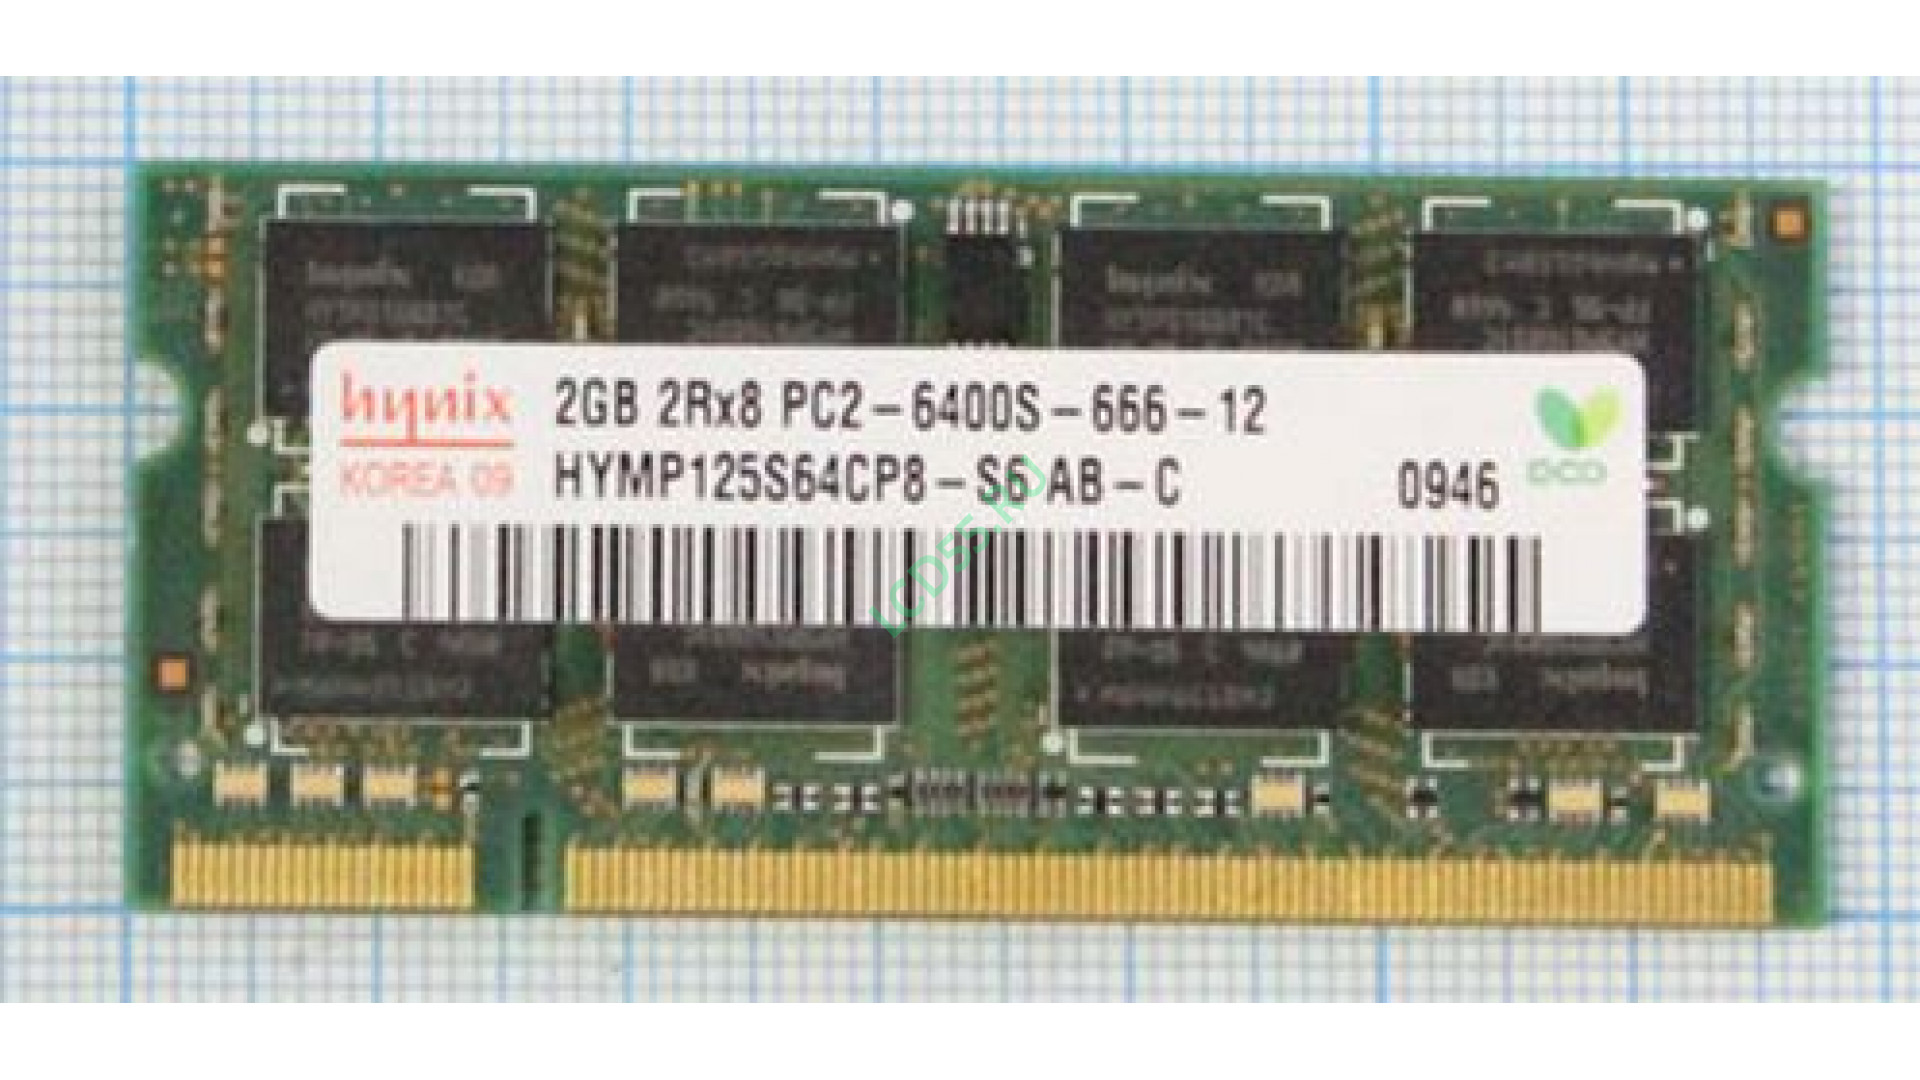 HYNIX HYMP125S64CP8-S6 AB-C DDR-II 800Mhz SODIMM 2Gb <PC2-6400>